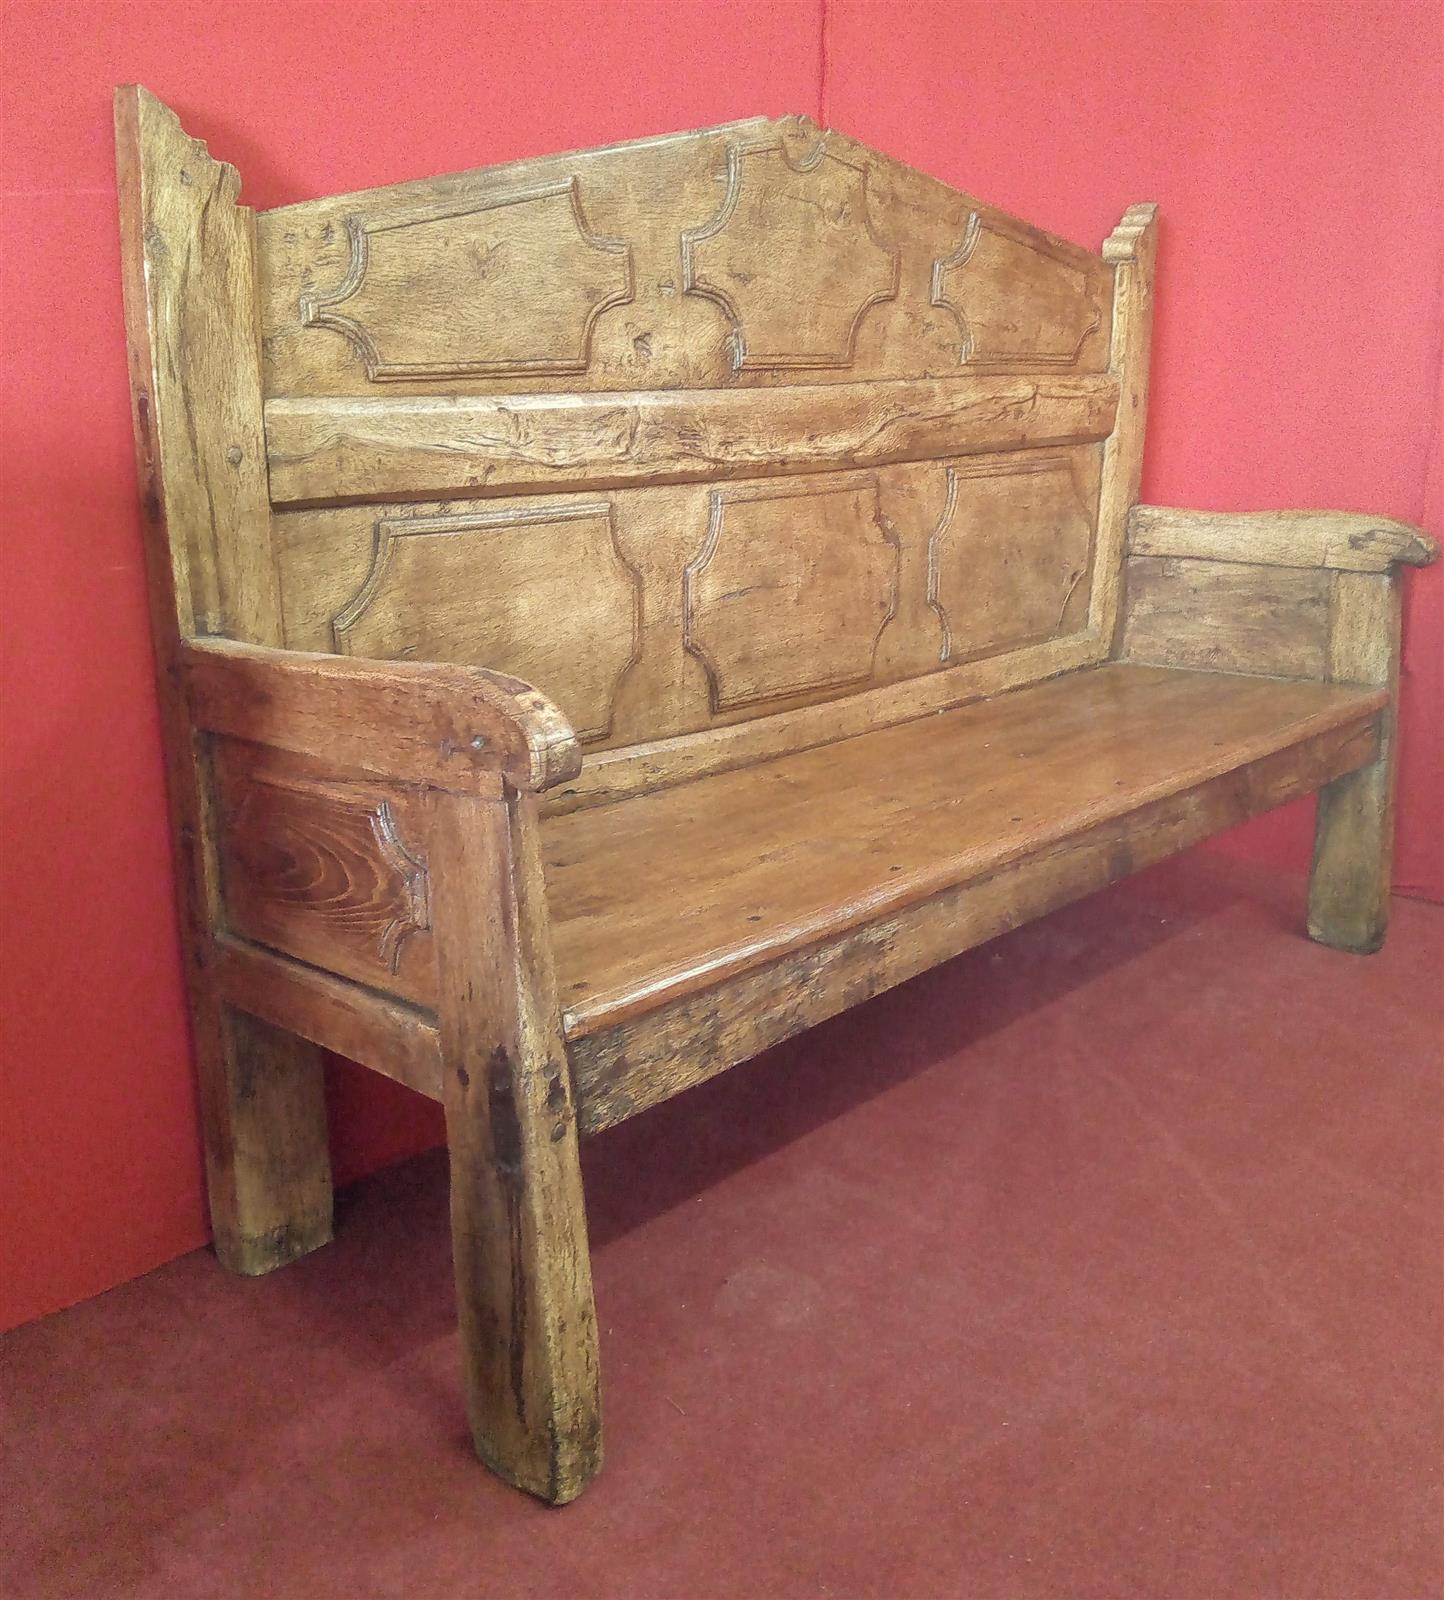 Emilian bench of the '600 in oak